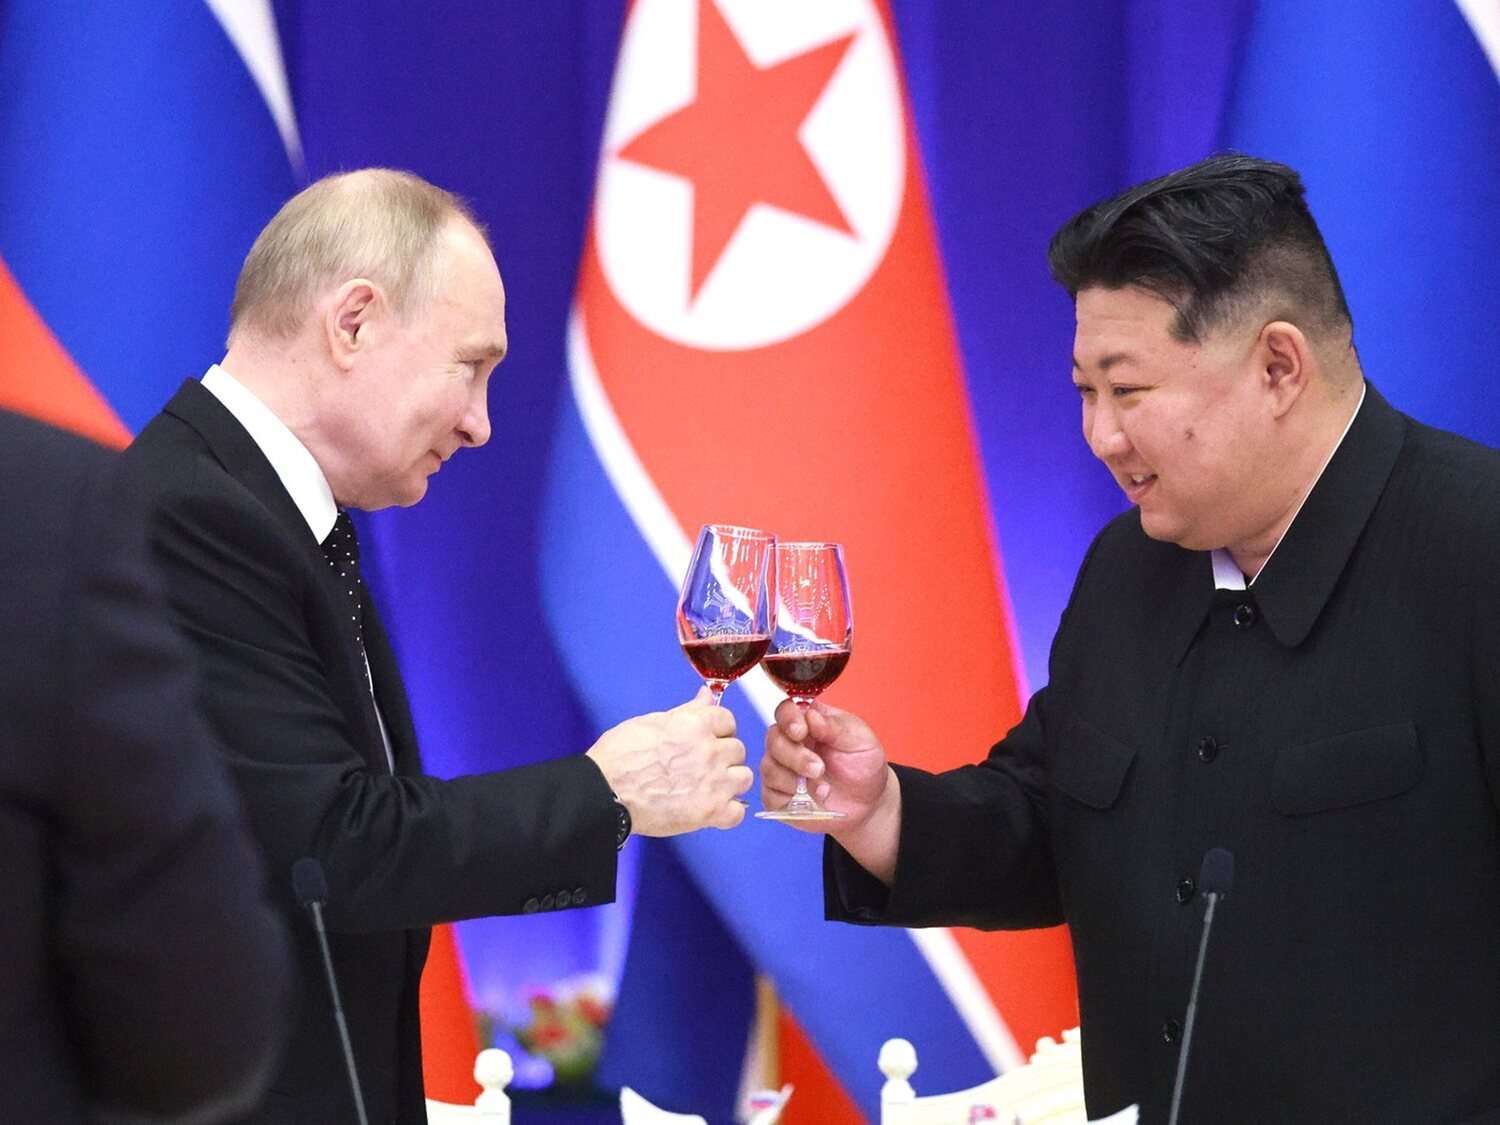 Claves de la reunión entre Putin y Kim Jong-un: qué implica en la política internacional